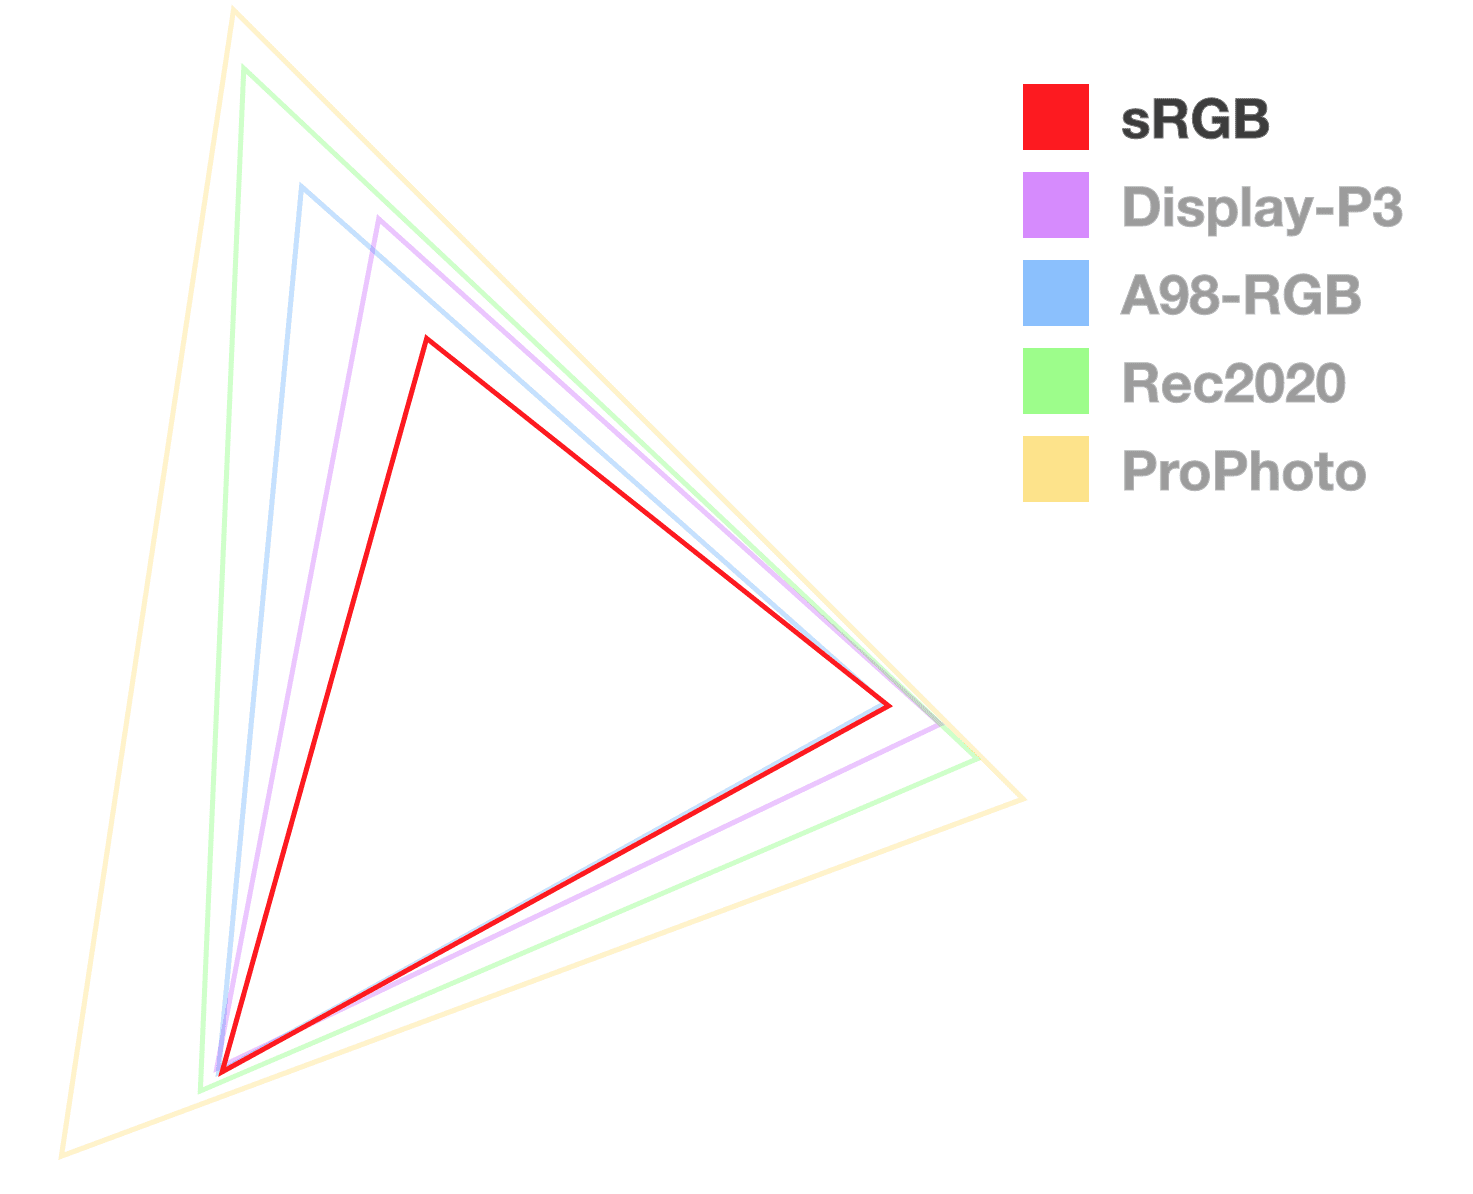 De sRGB-driehoek is de enige die volledig ondoorzichtig is, om de grootte van het kleurengamma te helpen visualiseren.